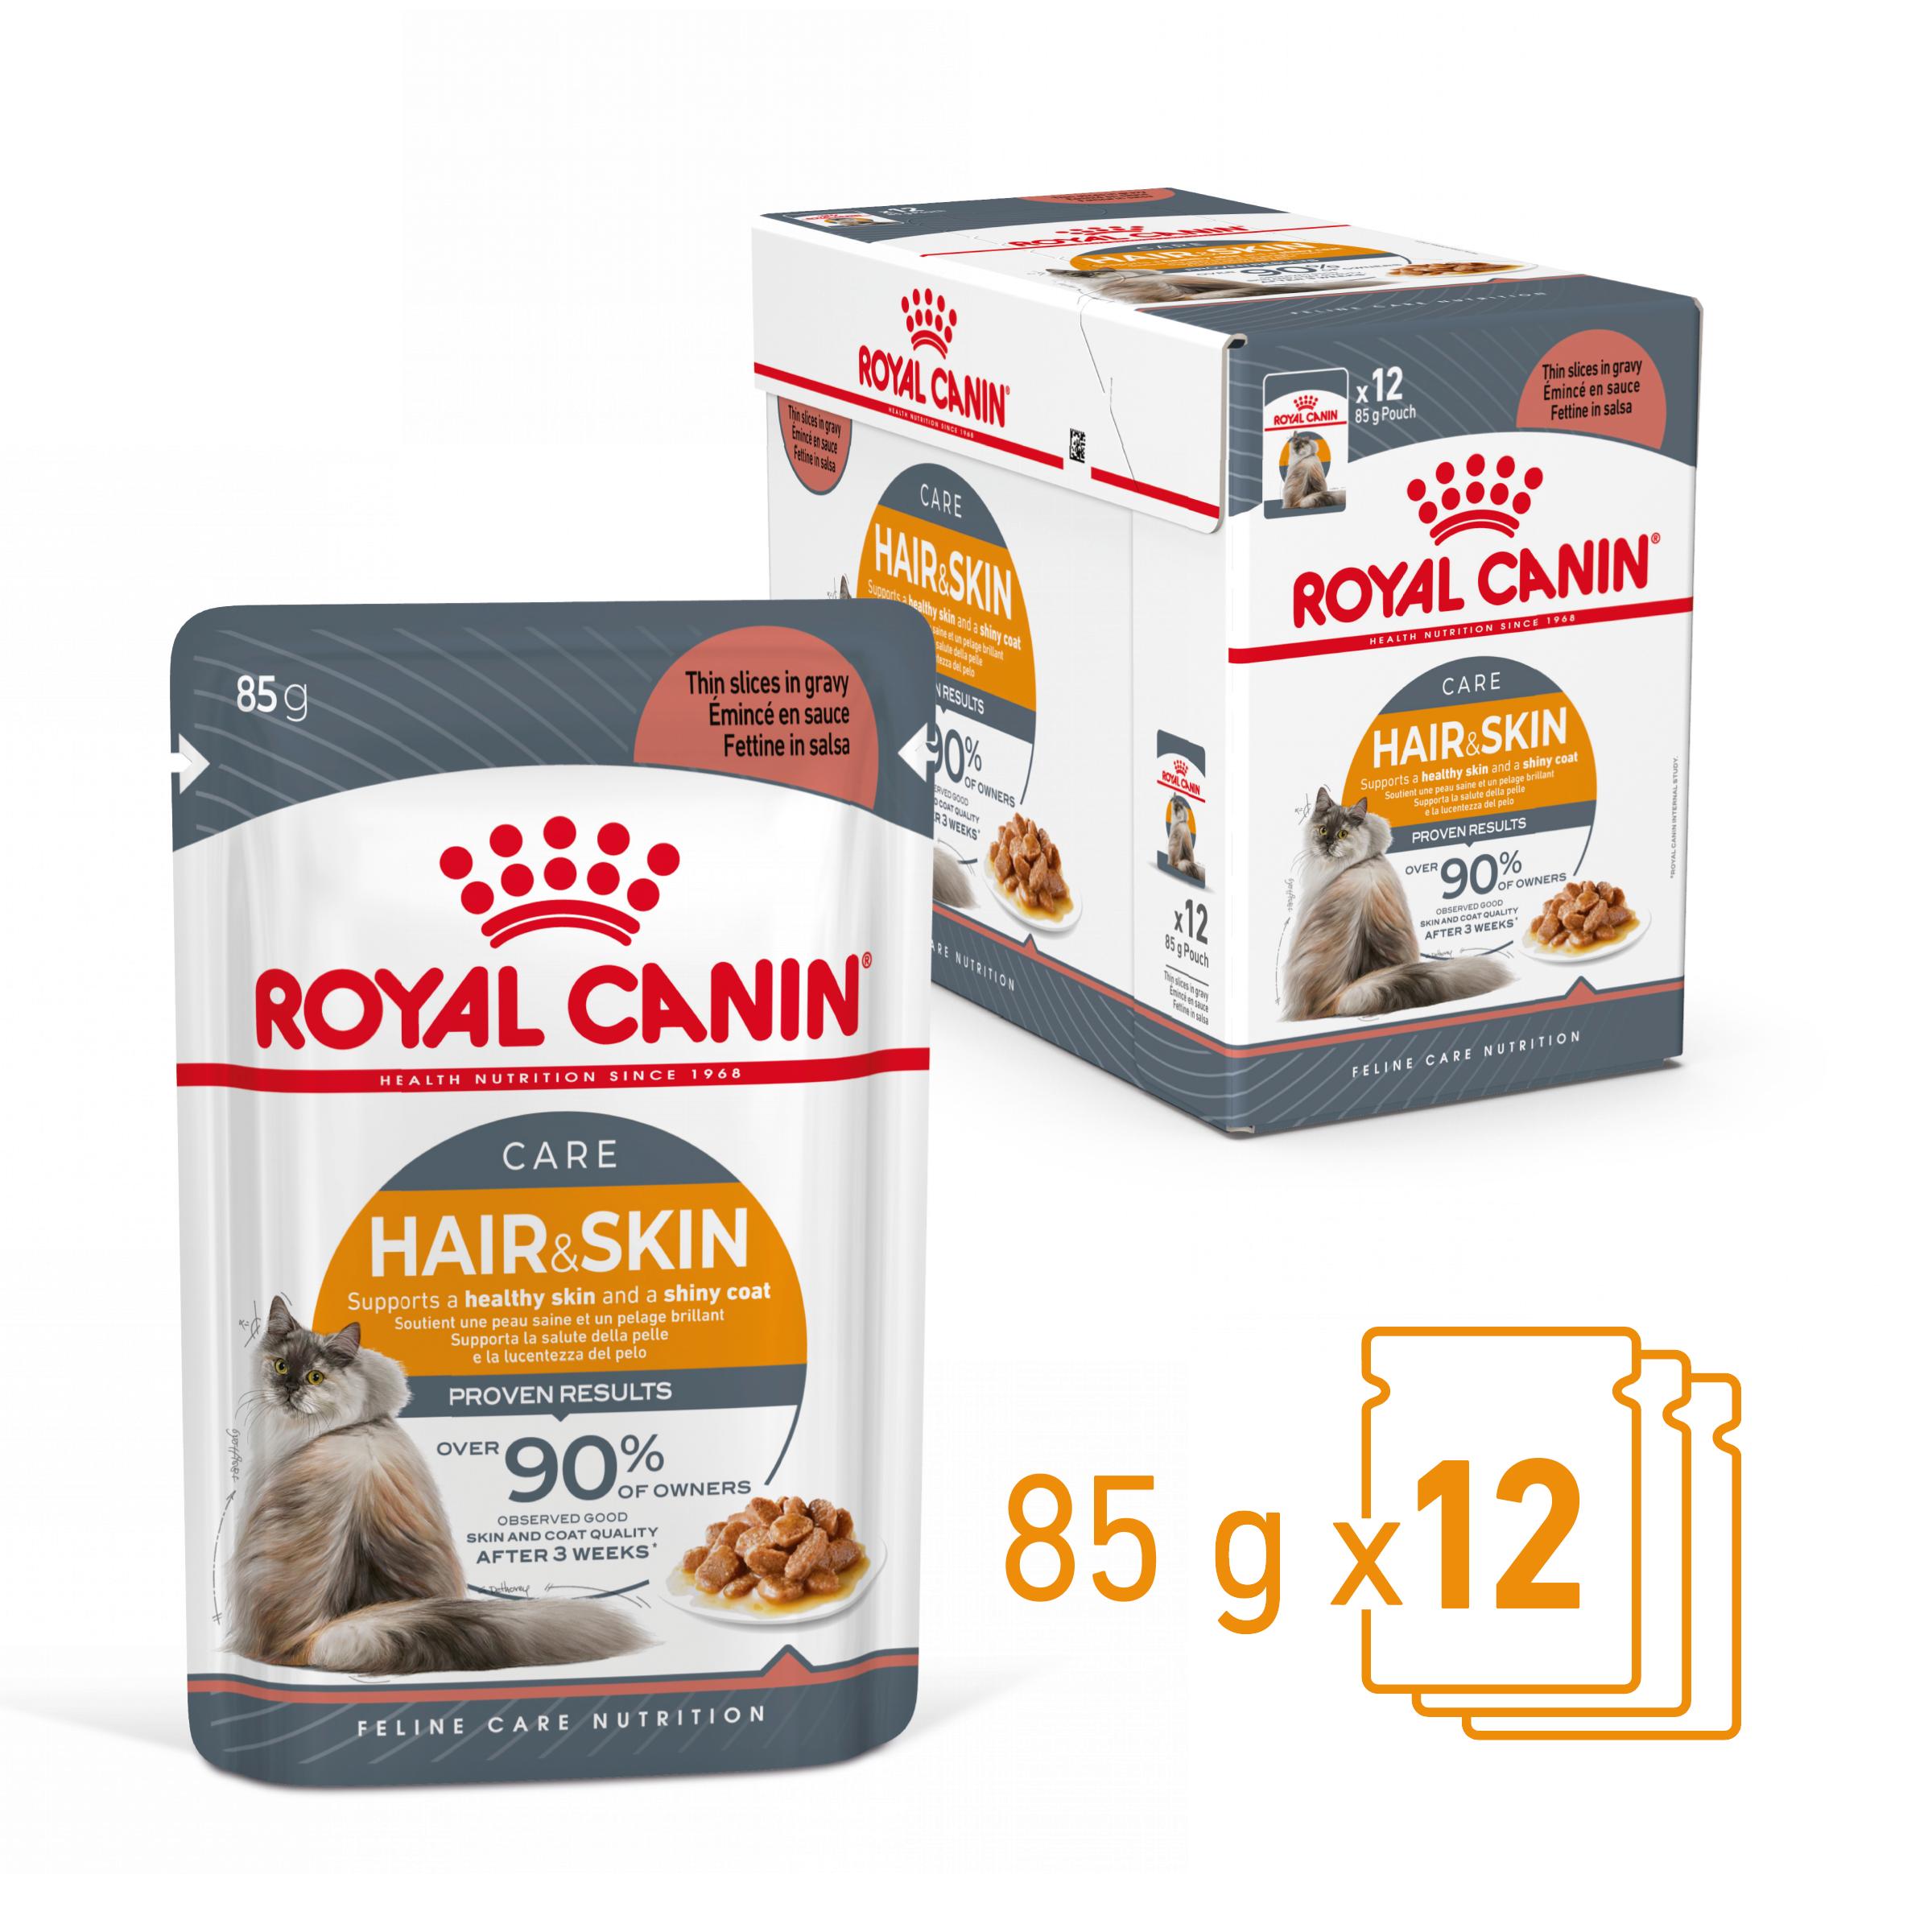 Royal Canin Intense Beauty in Gravy (émincés en sauce) - Aliment pour chats adultes. (émincé en sauce) - 12x85g